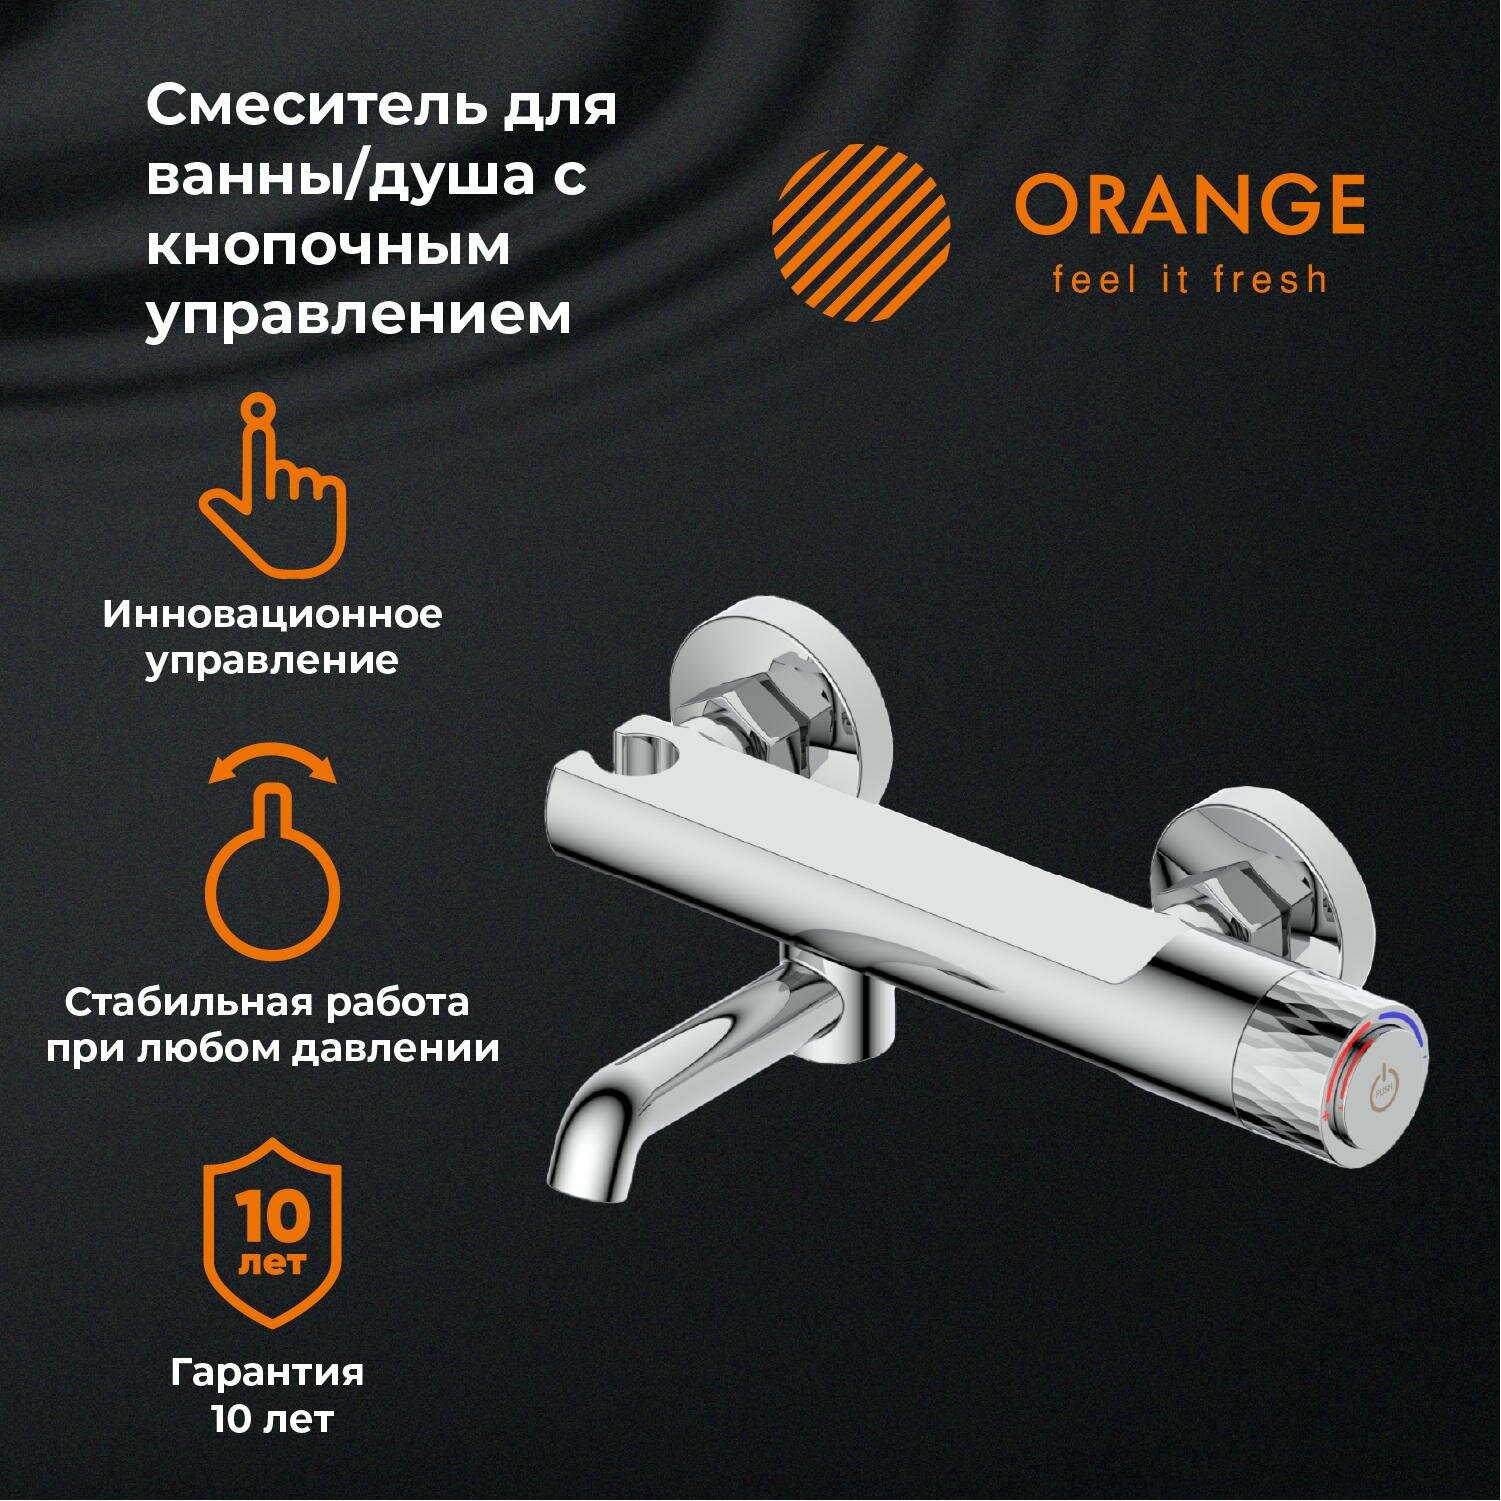 Смеситель для ванны/душа Orange PURE M02-100cr с кнопочным управлением